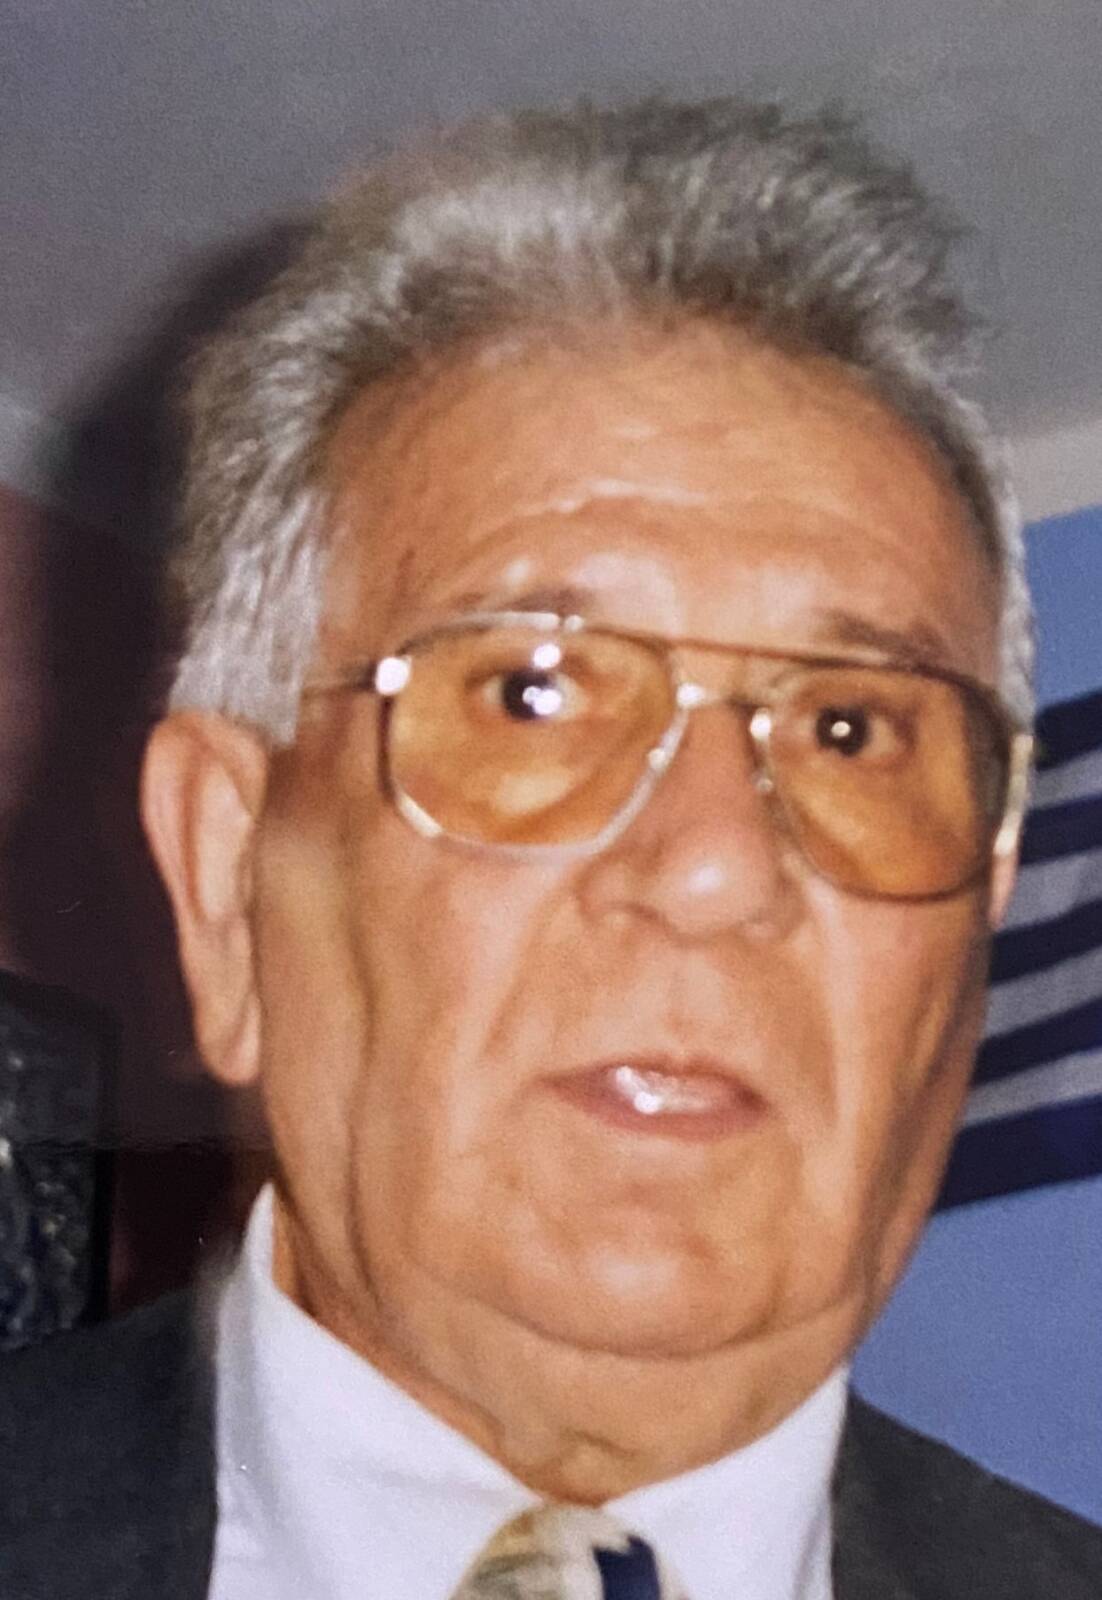 Έφυγε από τη ζωή o Τριαντάφυλλος Βασδέκης σε ηλικία 84 ετών-Η κηδεία θα τελεστεί σήμερα Δευτέρα 27 Ιουνίου